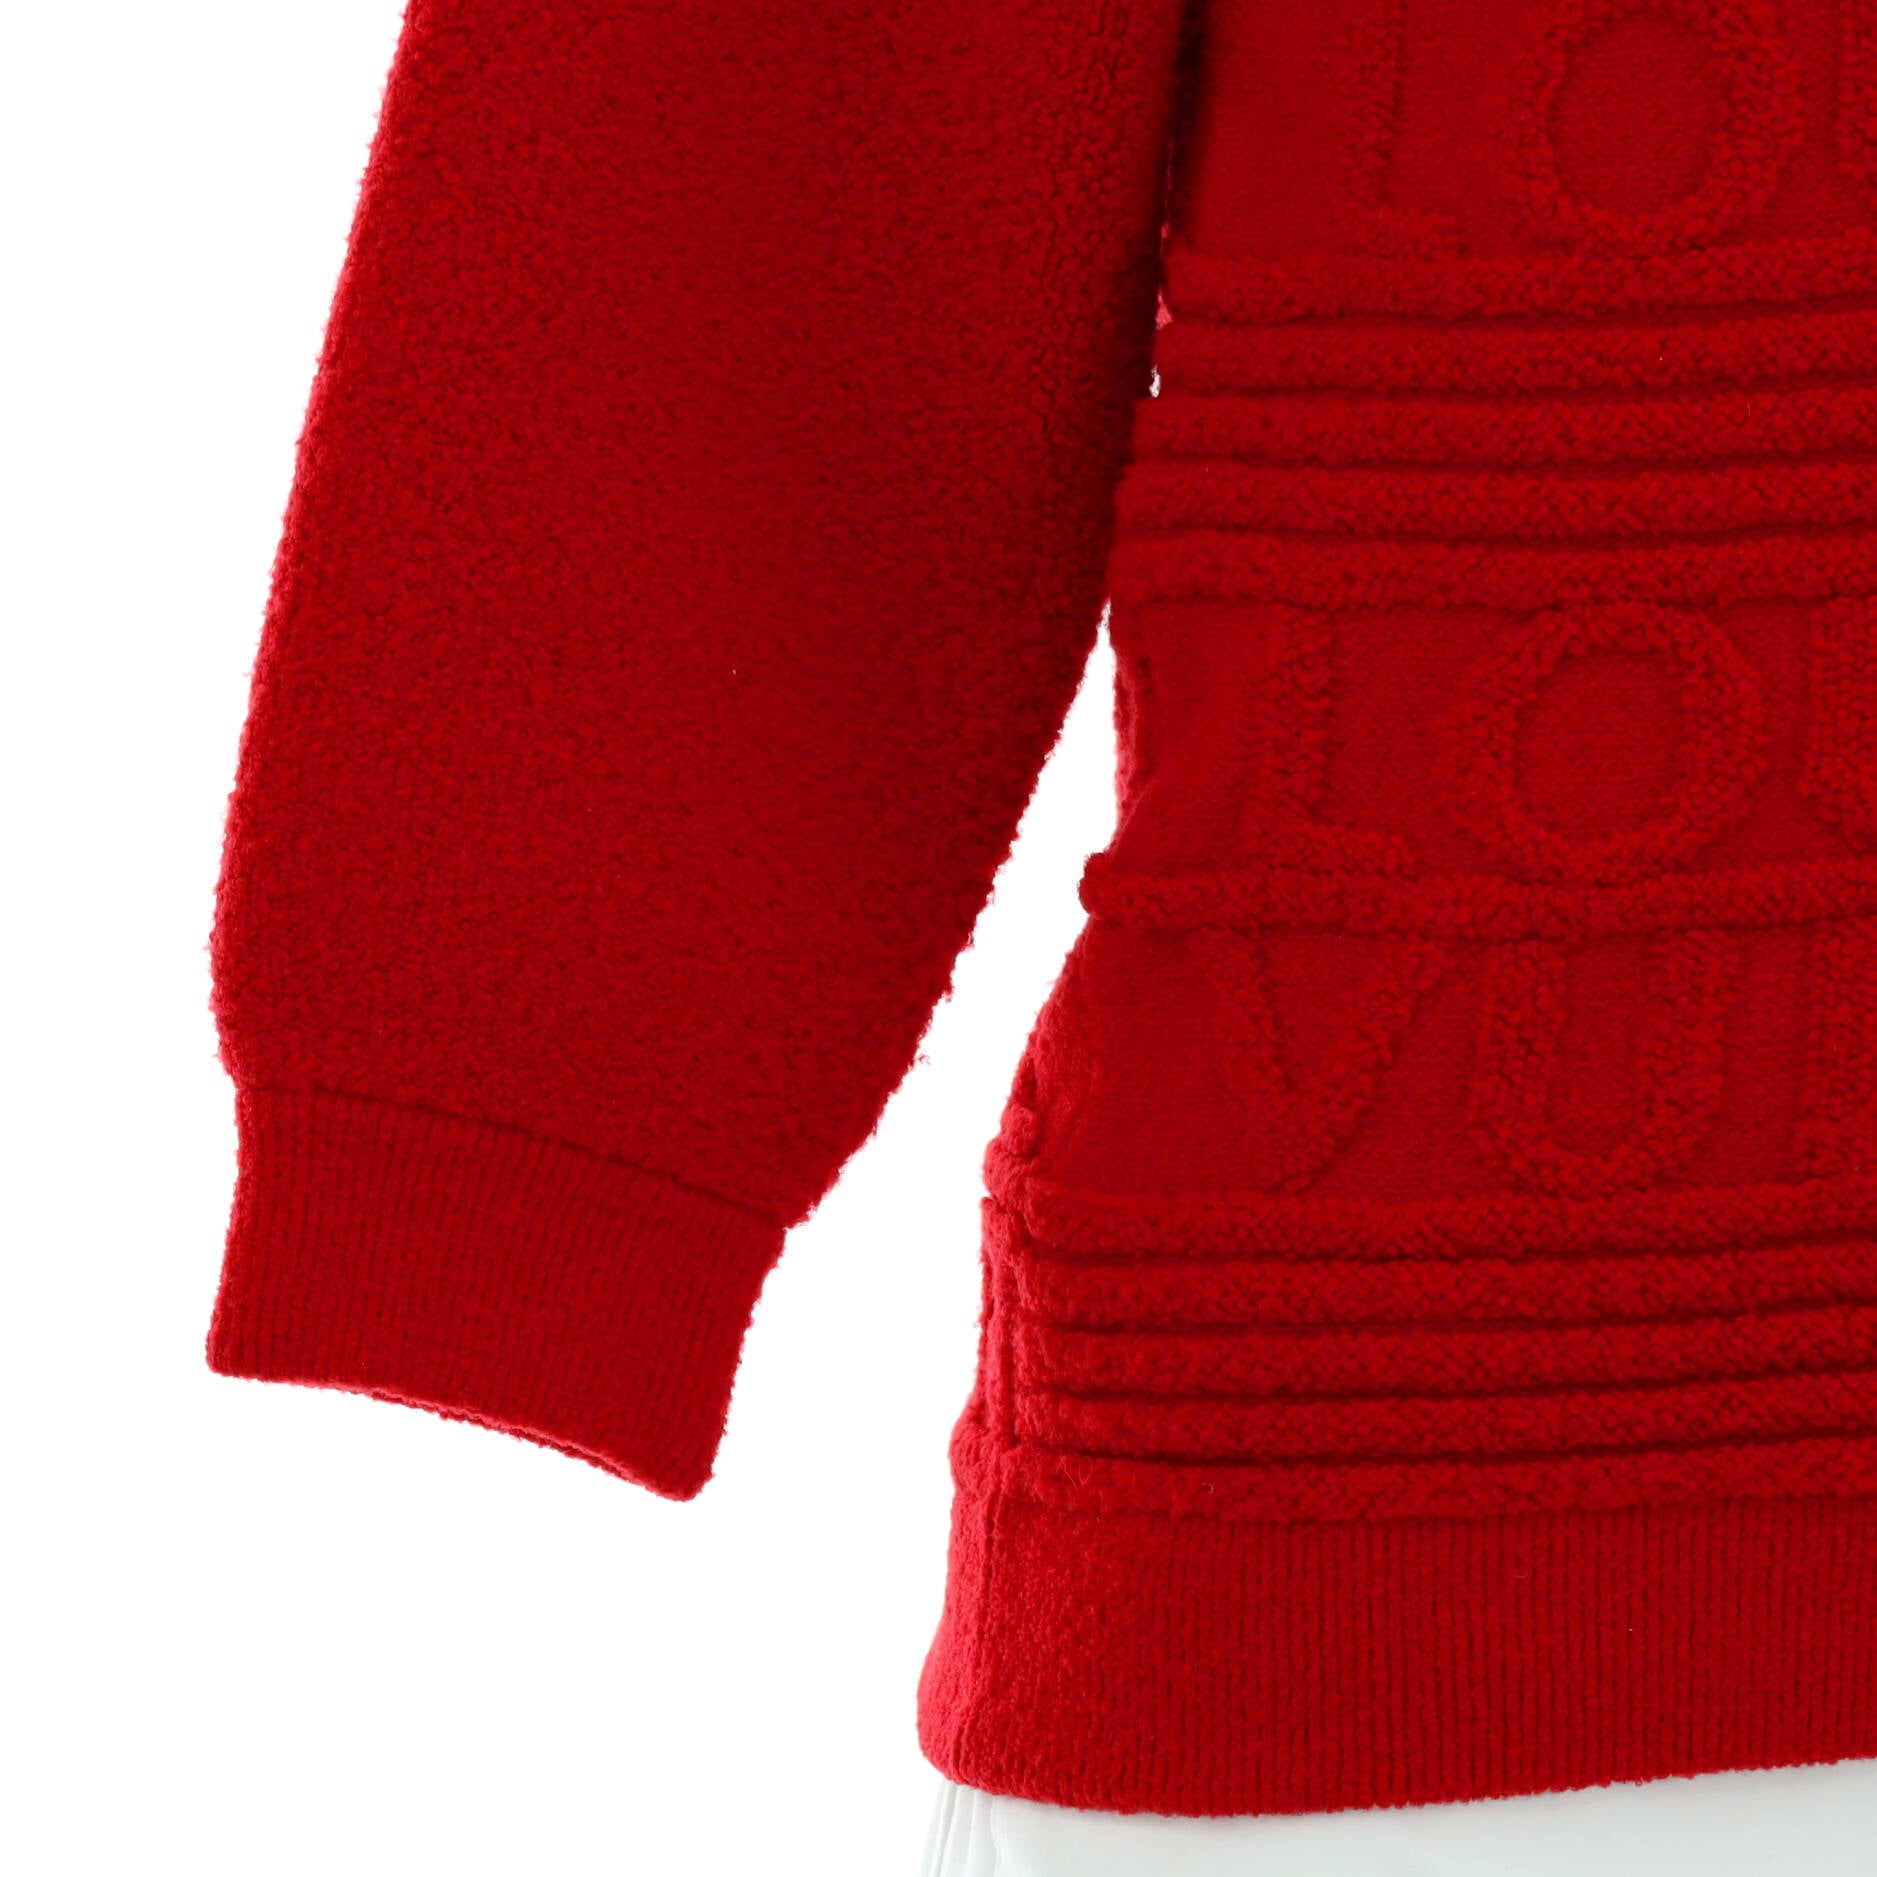 Louis Vuitton Men's Crewneck Sweater Cotton and Acrylic Blend Monogram  Jacquard